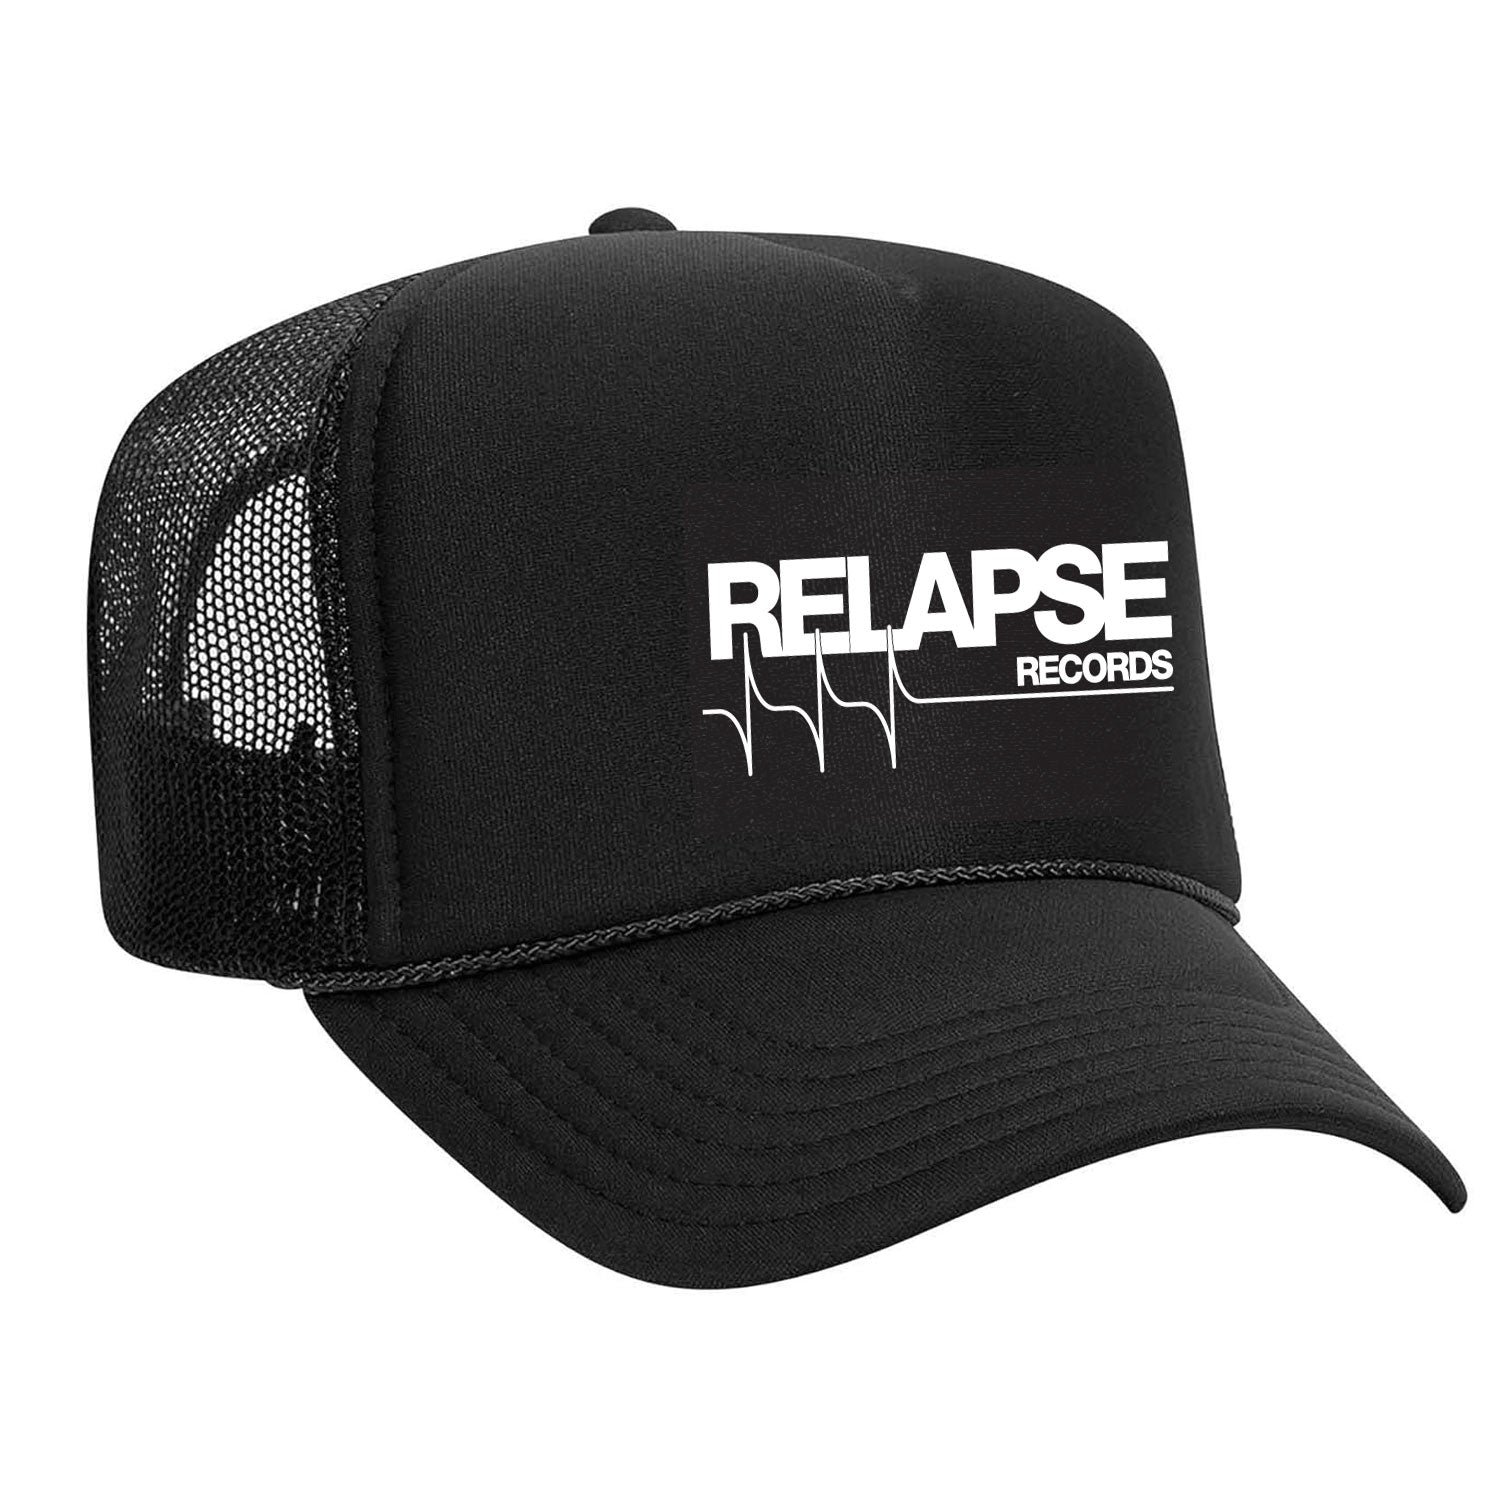 Relapse Records "Logo" Trucker Hat